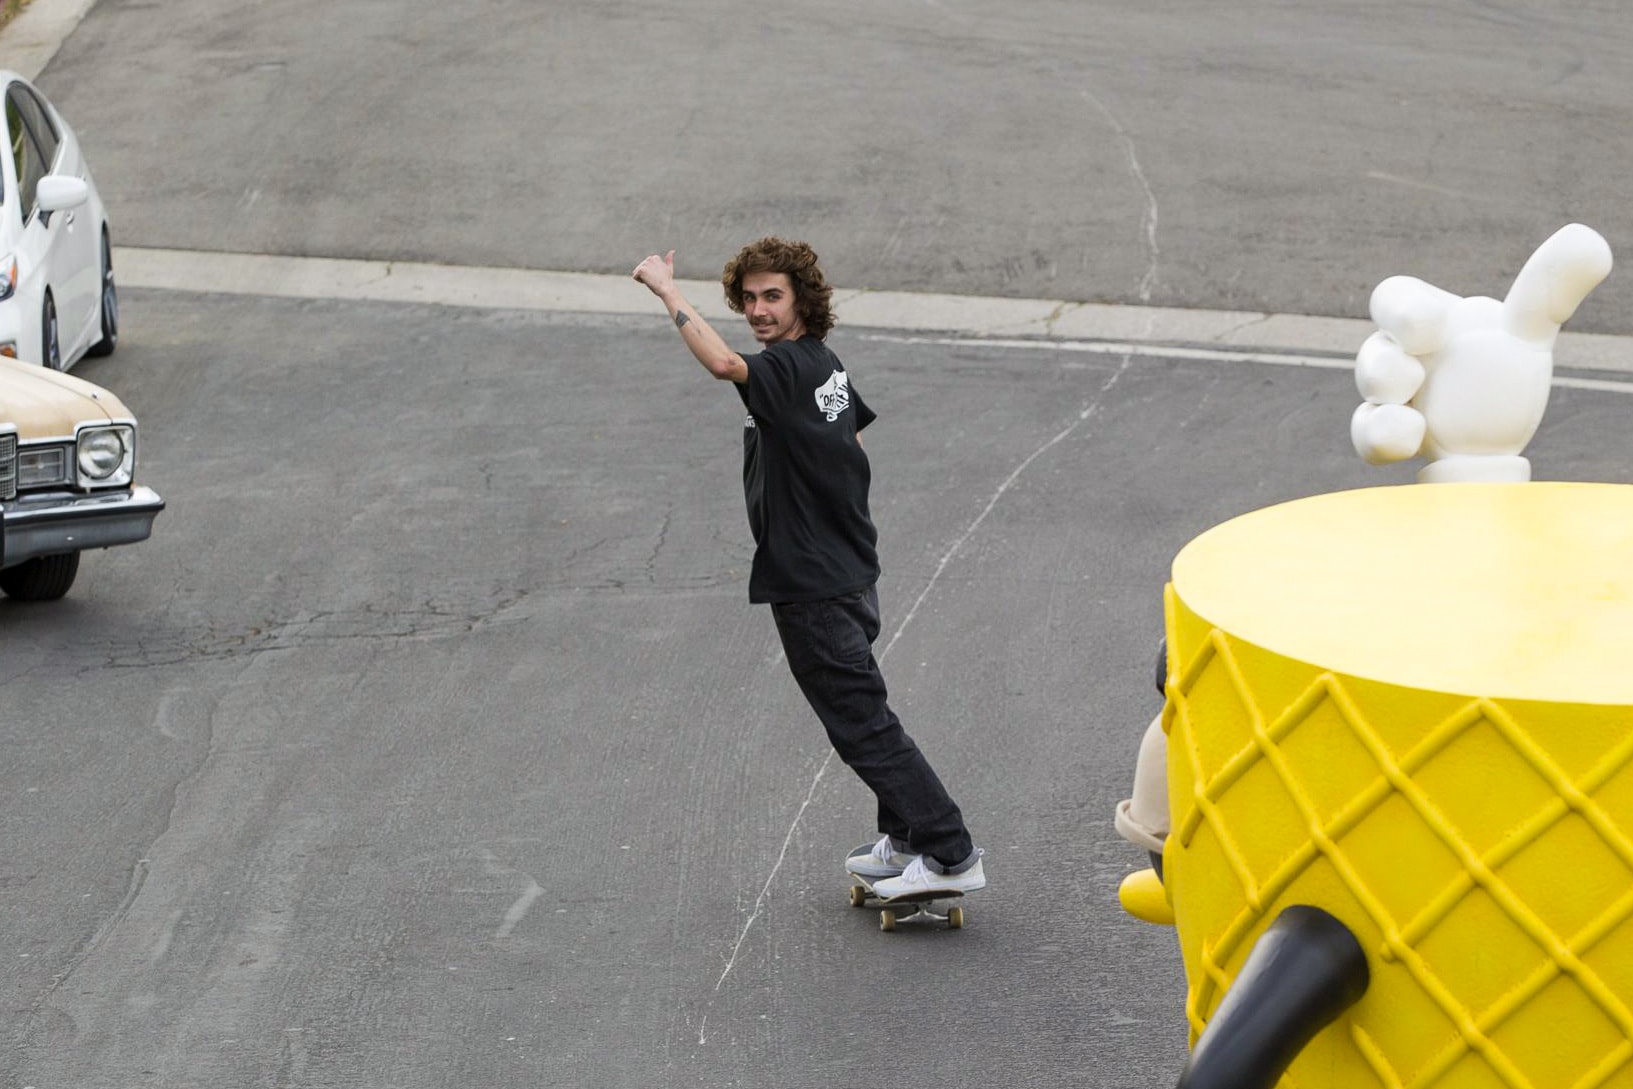 Skateboarding Vans Real Skateboards Thrasher Magazine Kyle Walker Soty Skater Of The Year